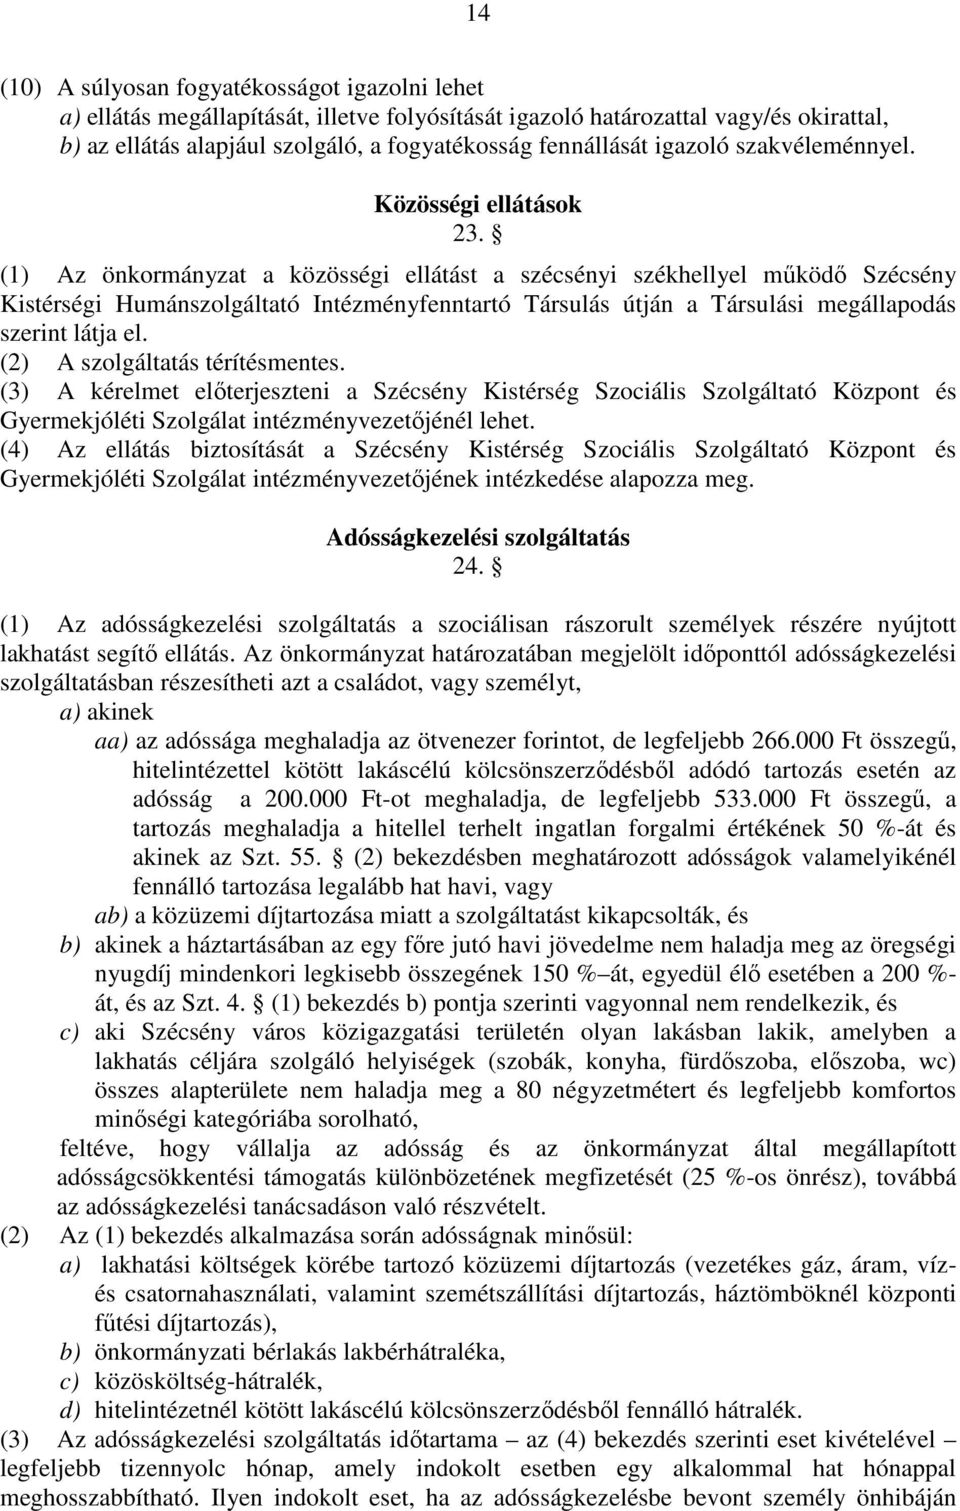 (1) Az önkormányzat a közösségi ellátást a szécsényi székhellyel mőködı Szécsény Kistérségi Humánszolgáltató Intézményfenntartó Társulás útján a Társulási megállapodás szerint látja el.